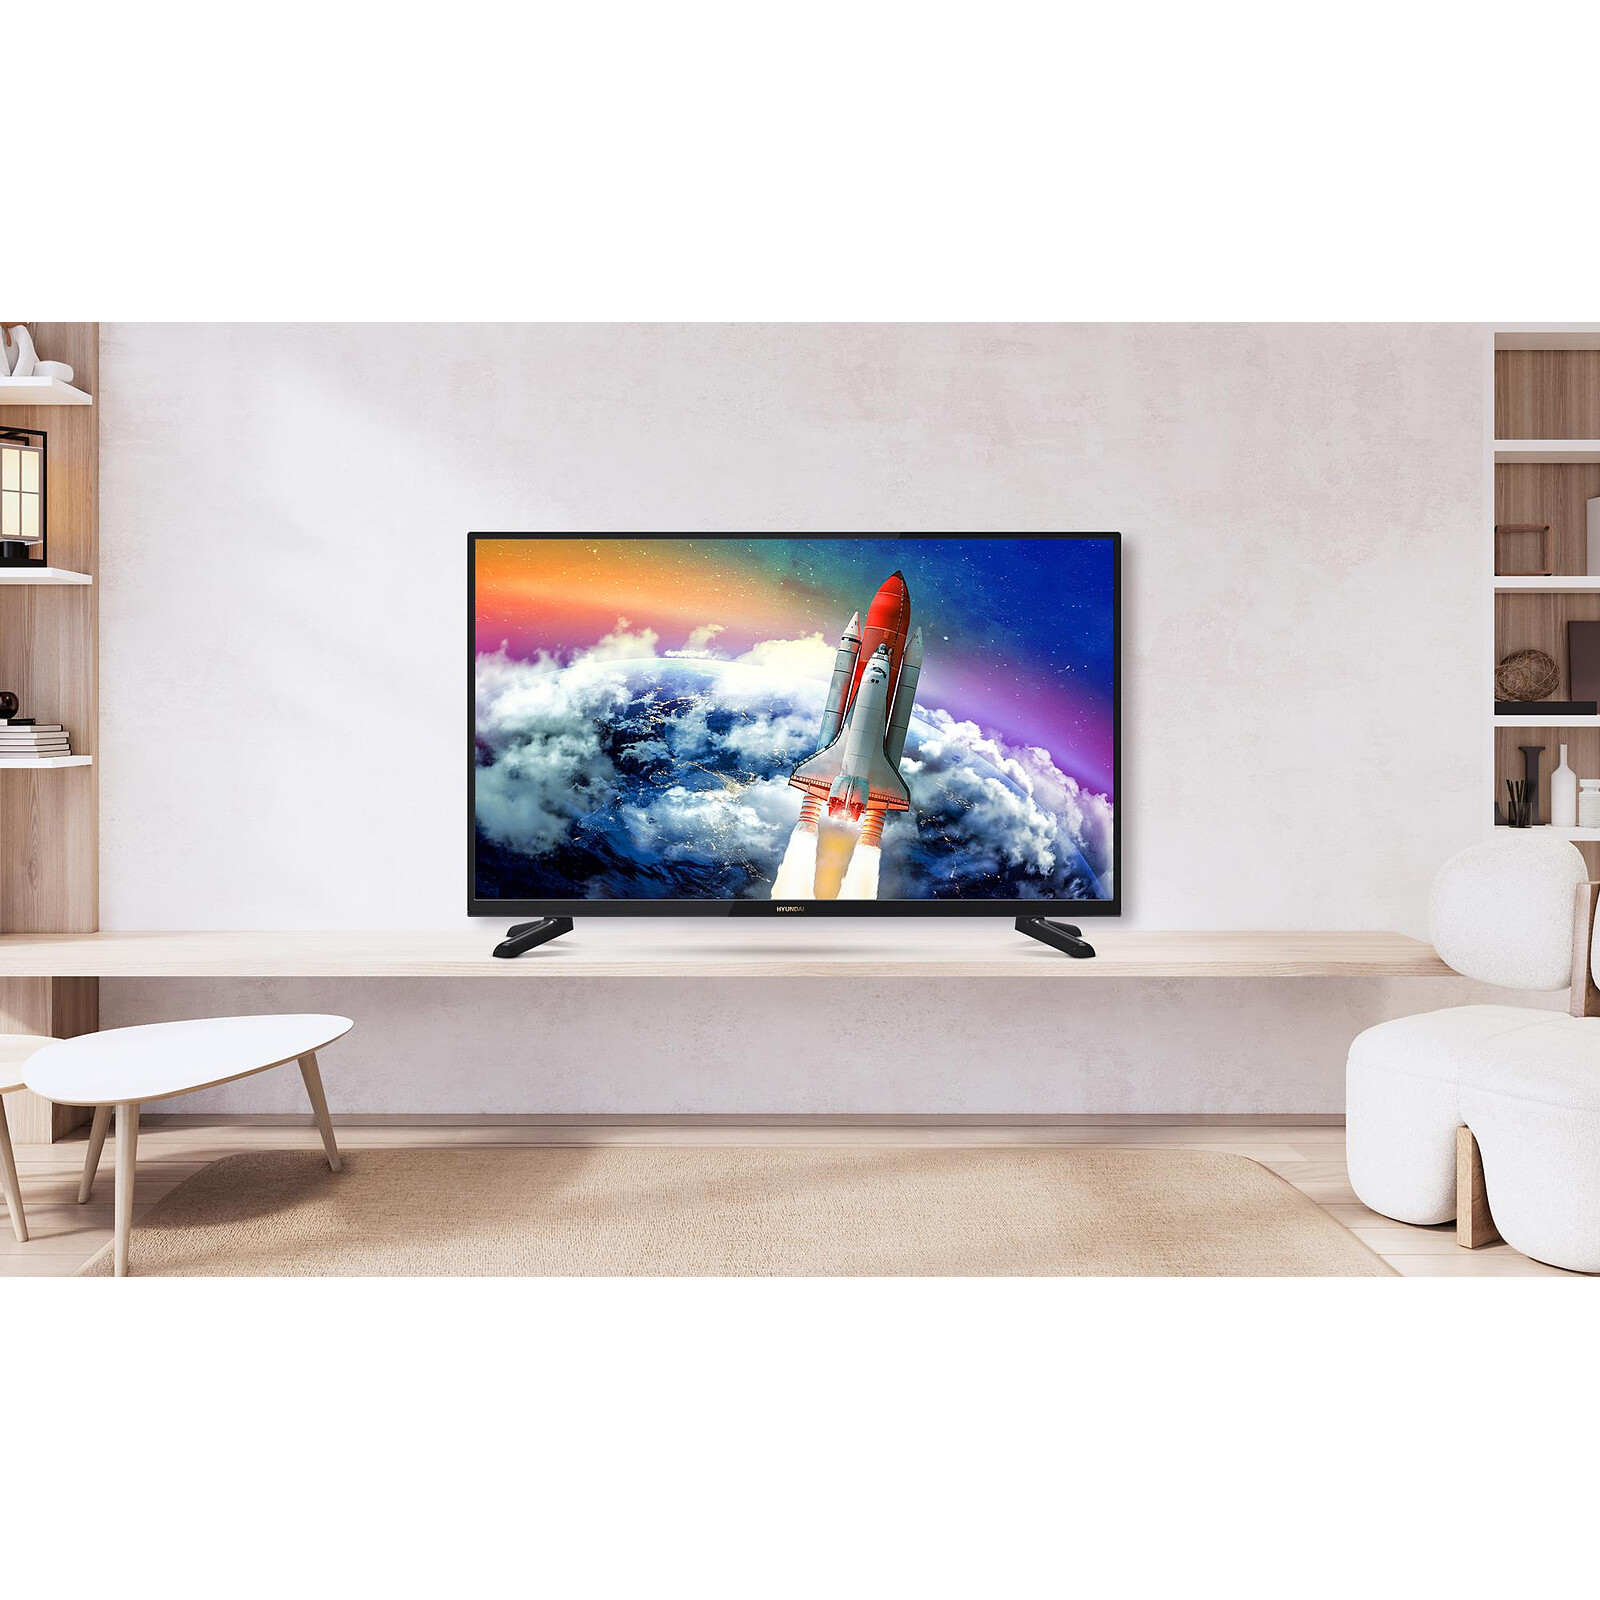 TV LED POLAROID TQL42FDPR001 42'' (105 cm) Full HD